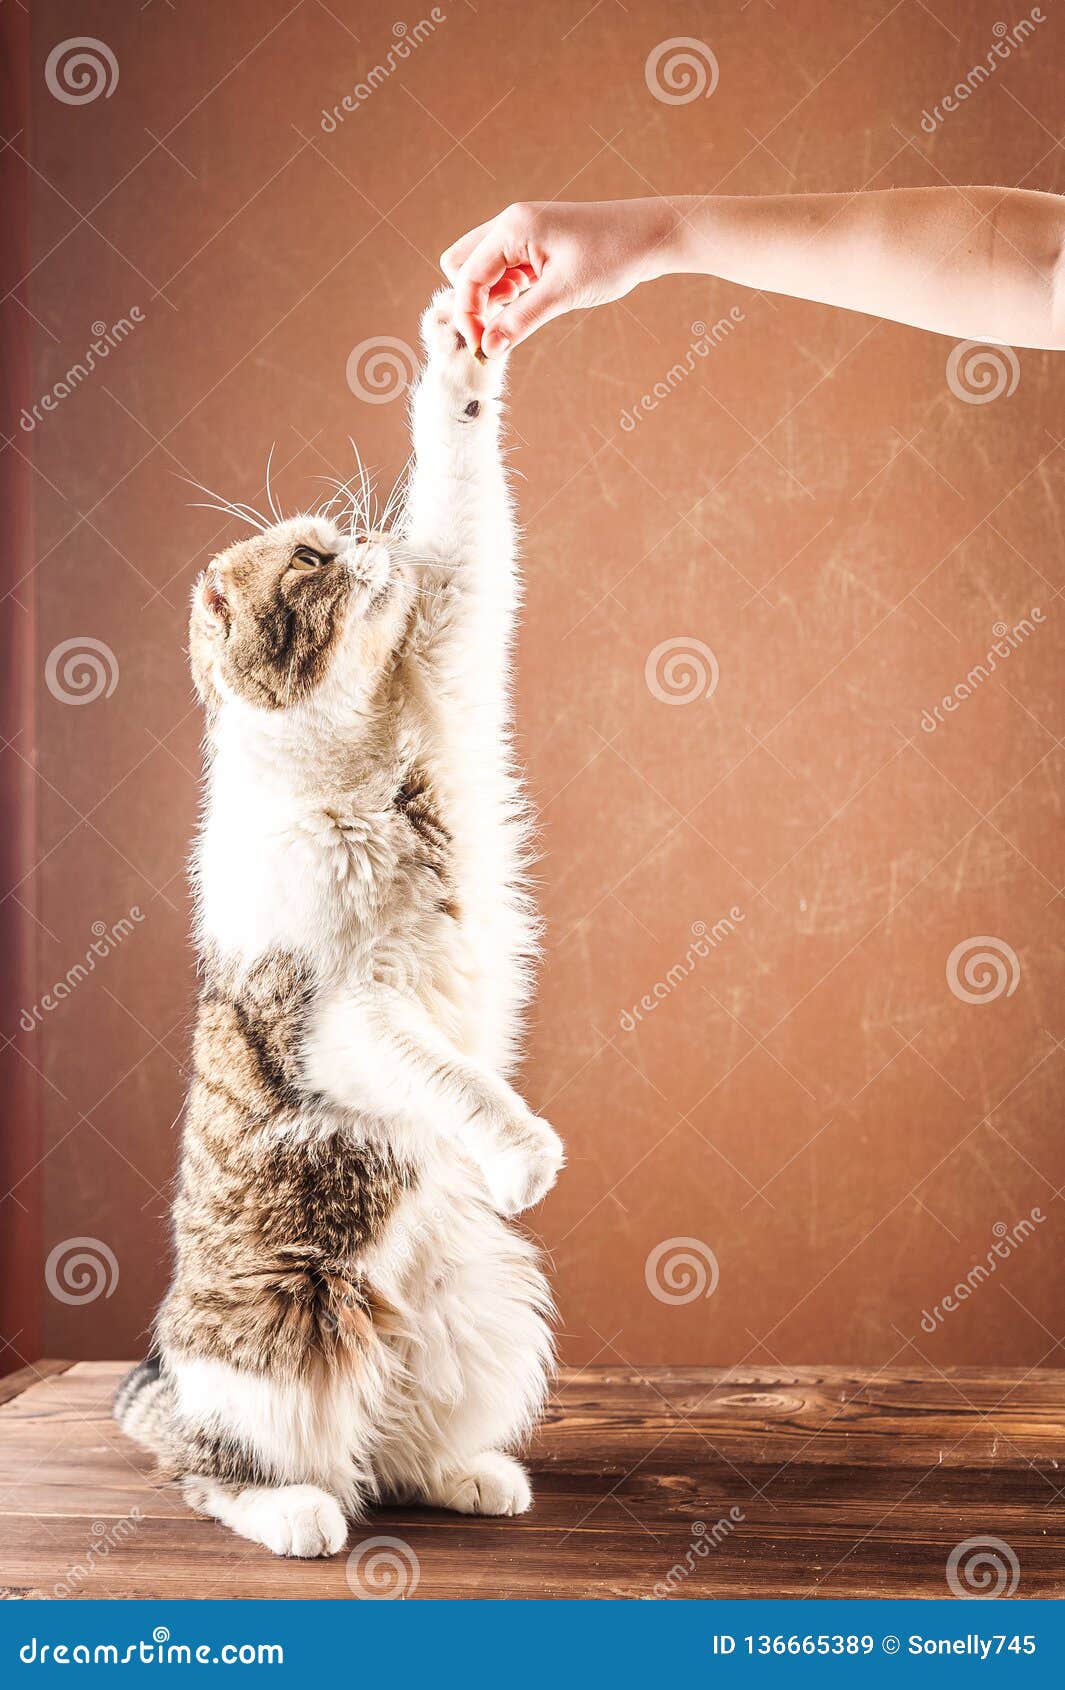 Великобританский кот shorthair стоит на своих задних ногах Домашняя кошка кормила еду с руками